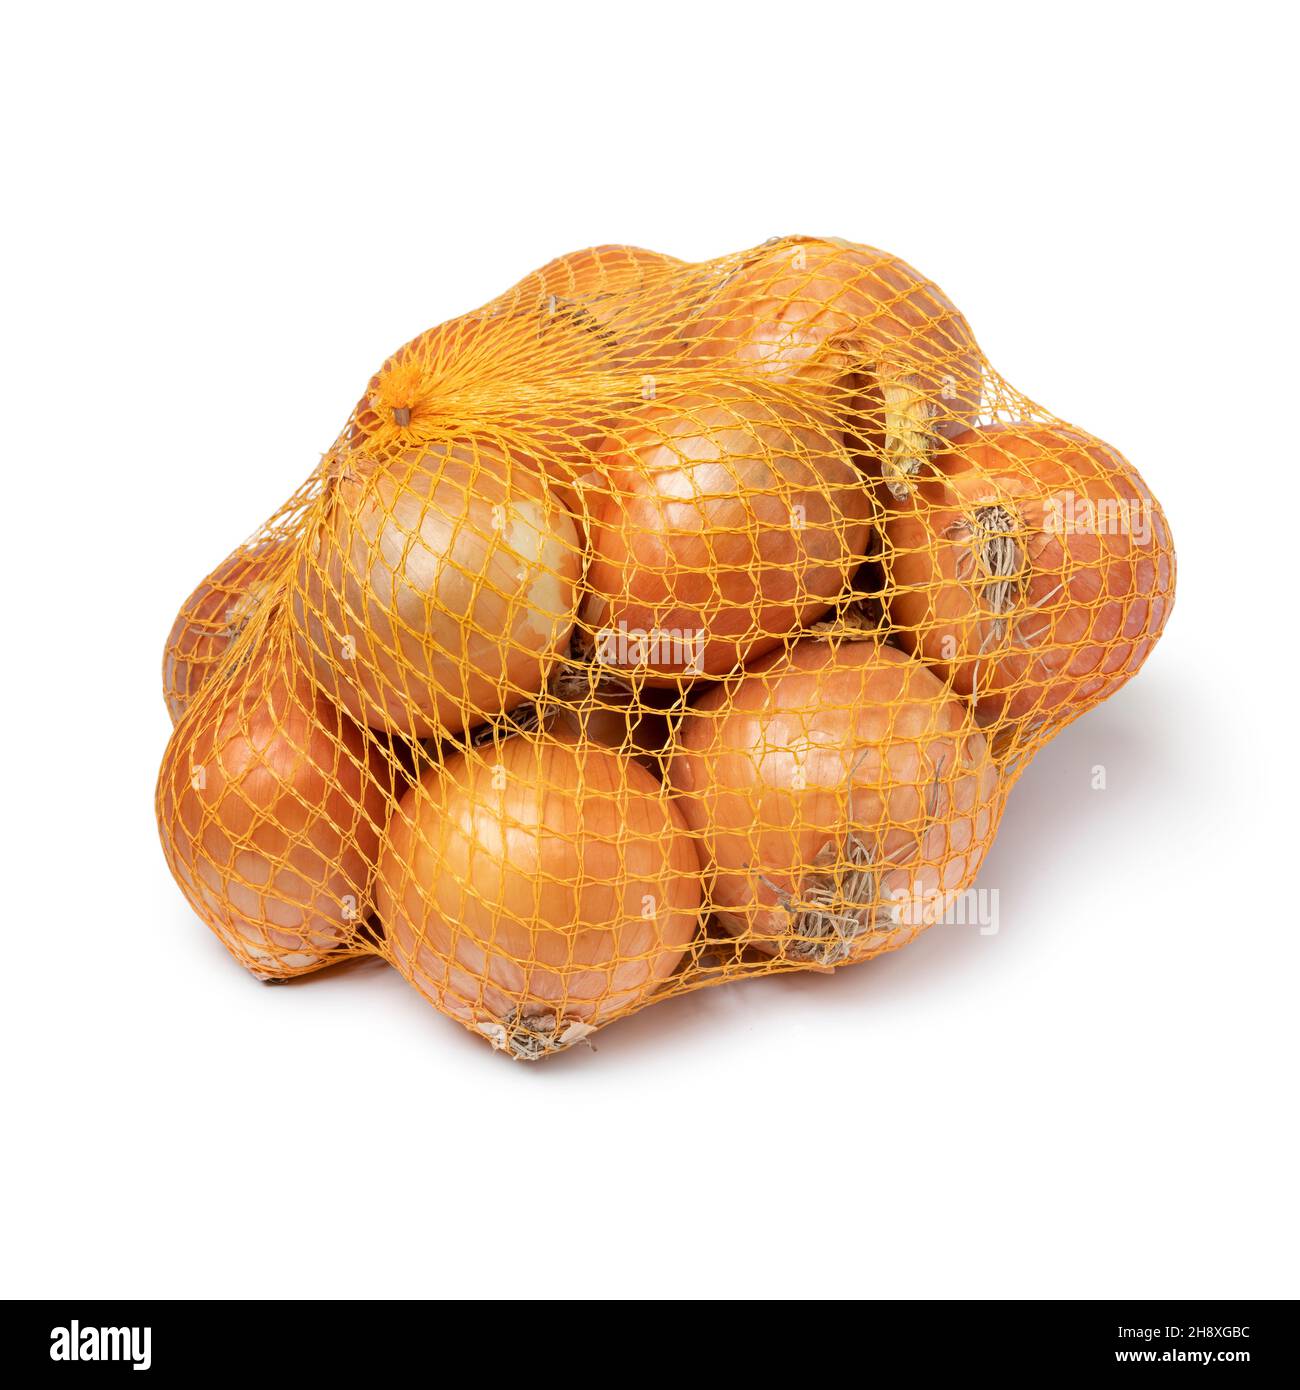 Confezione di cipolle fresche crude in una rete isolata su sfondo bianco Foto Stock